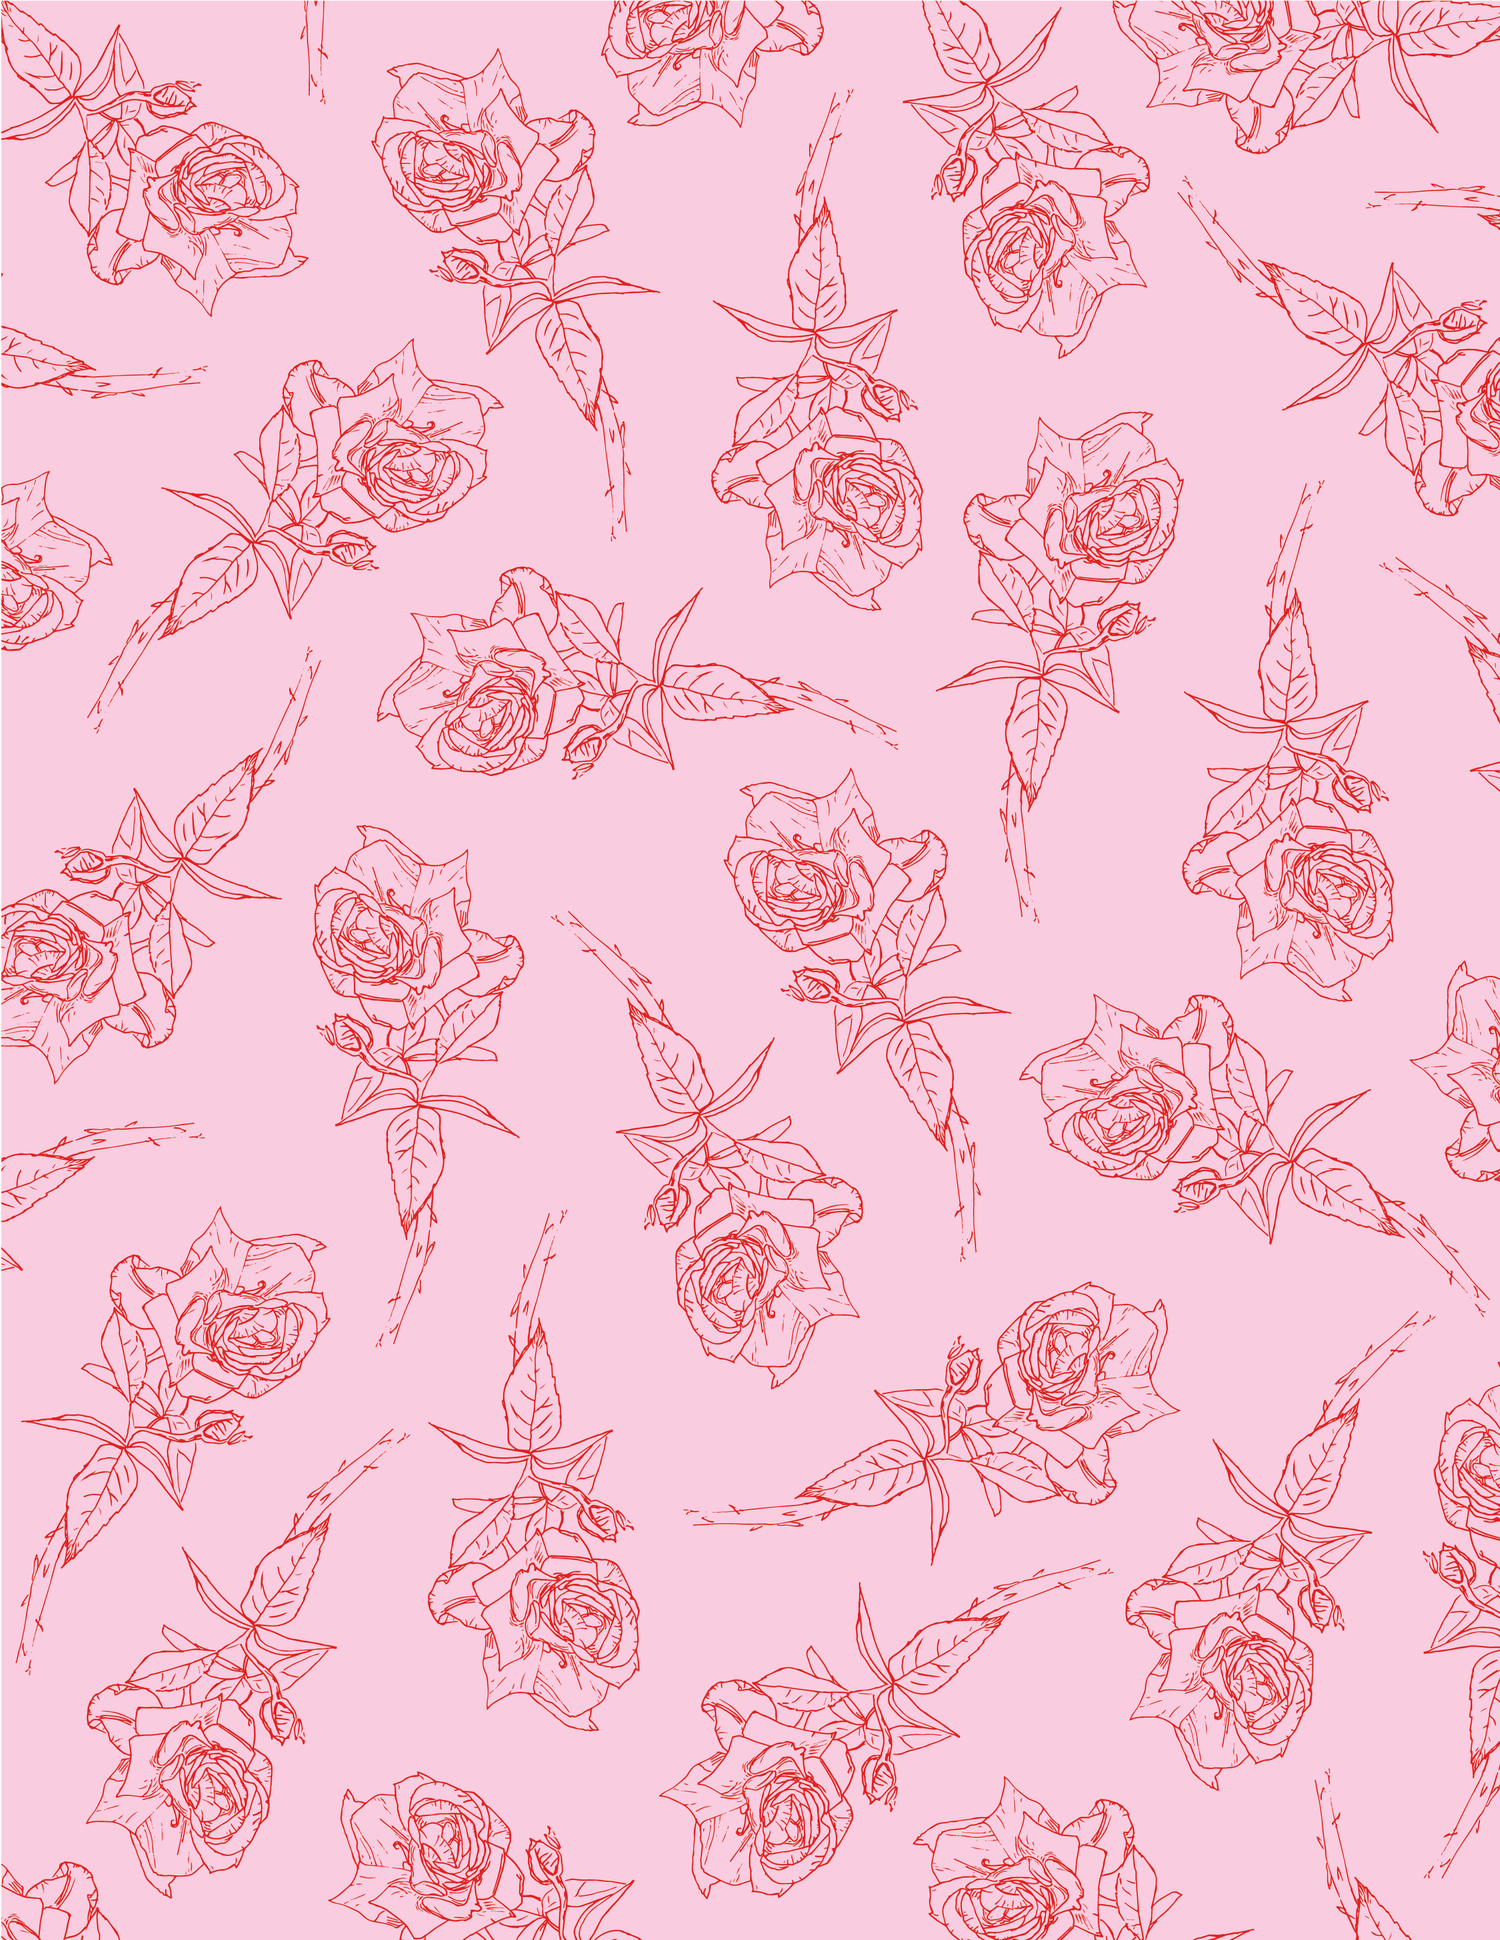 rose+pattern-05.png